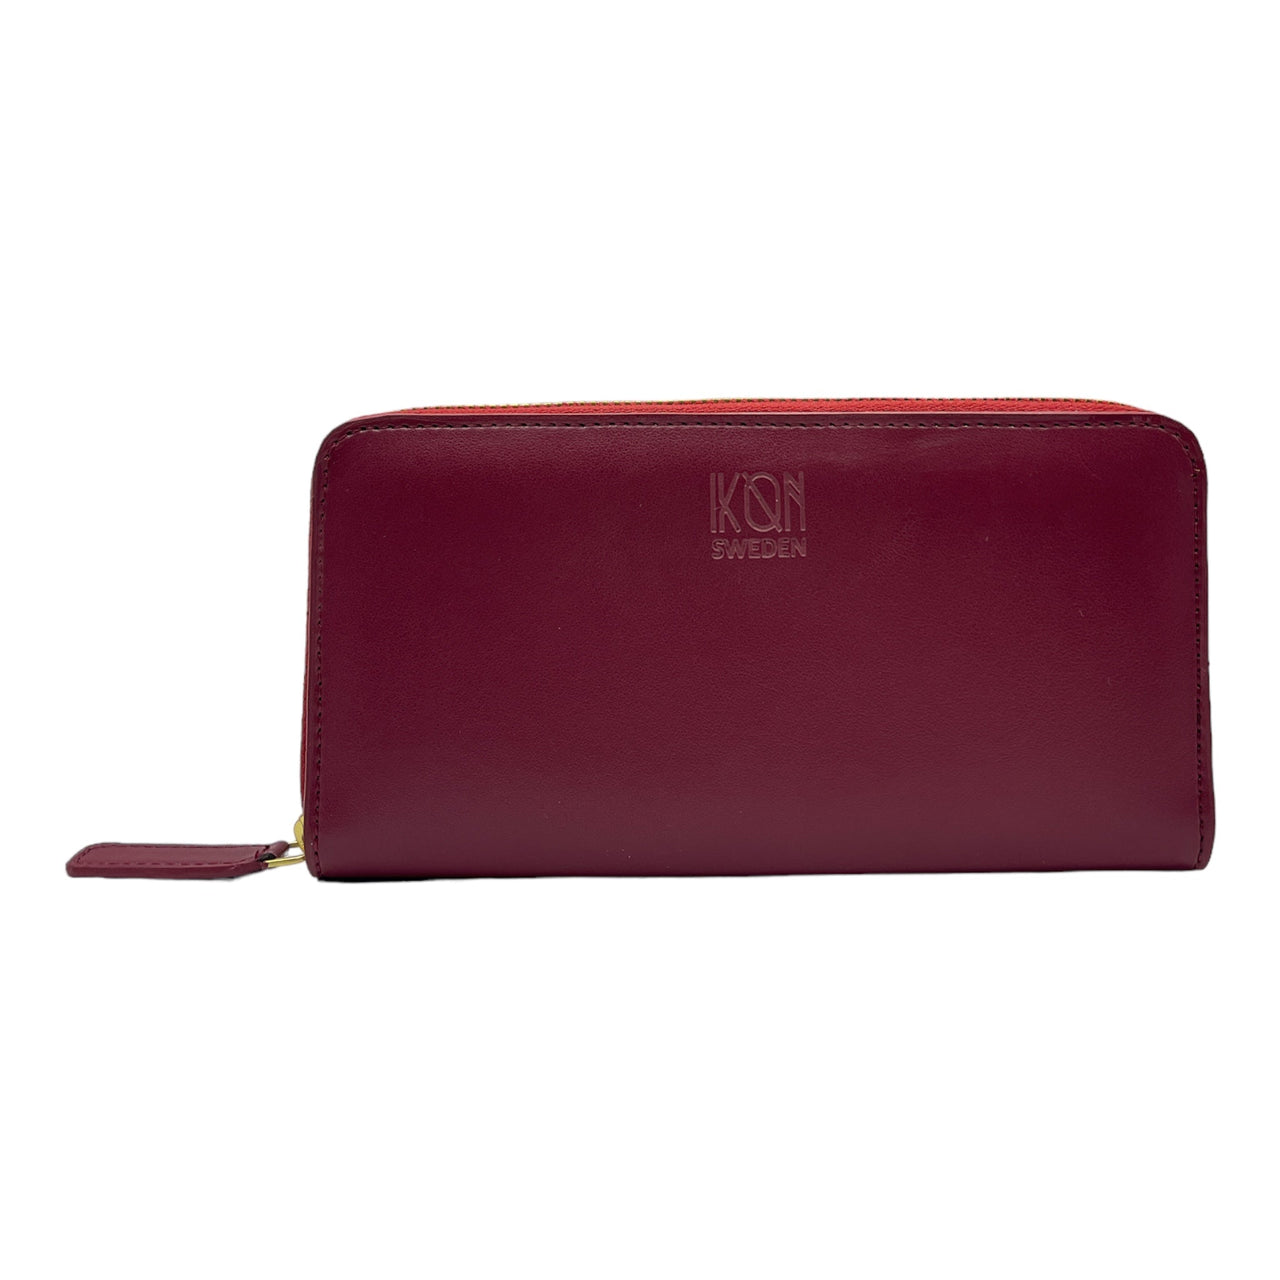 Kivik | Apple Leather Long Zip Wallet - Wine Red-5